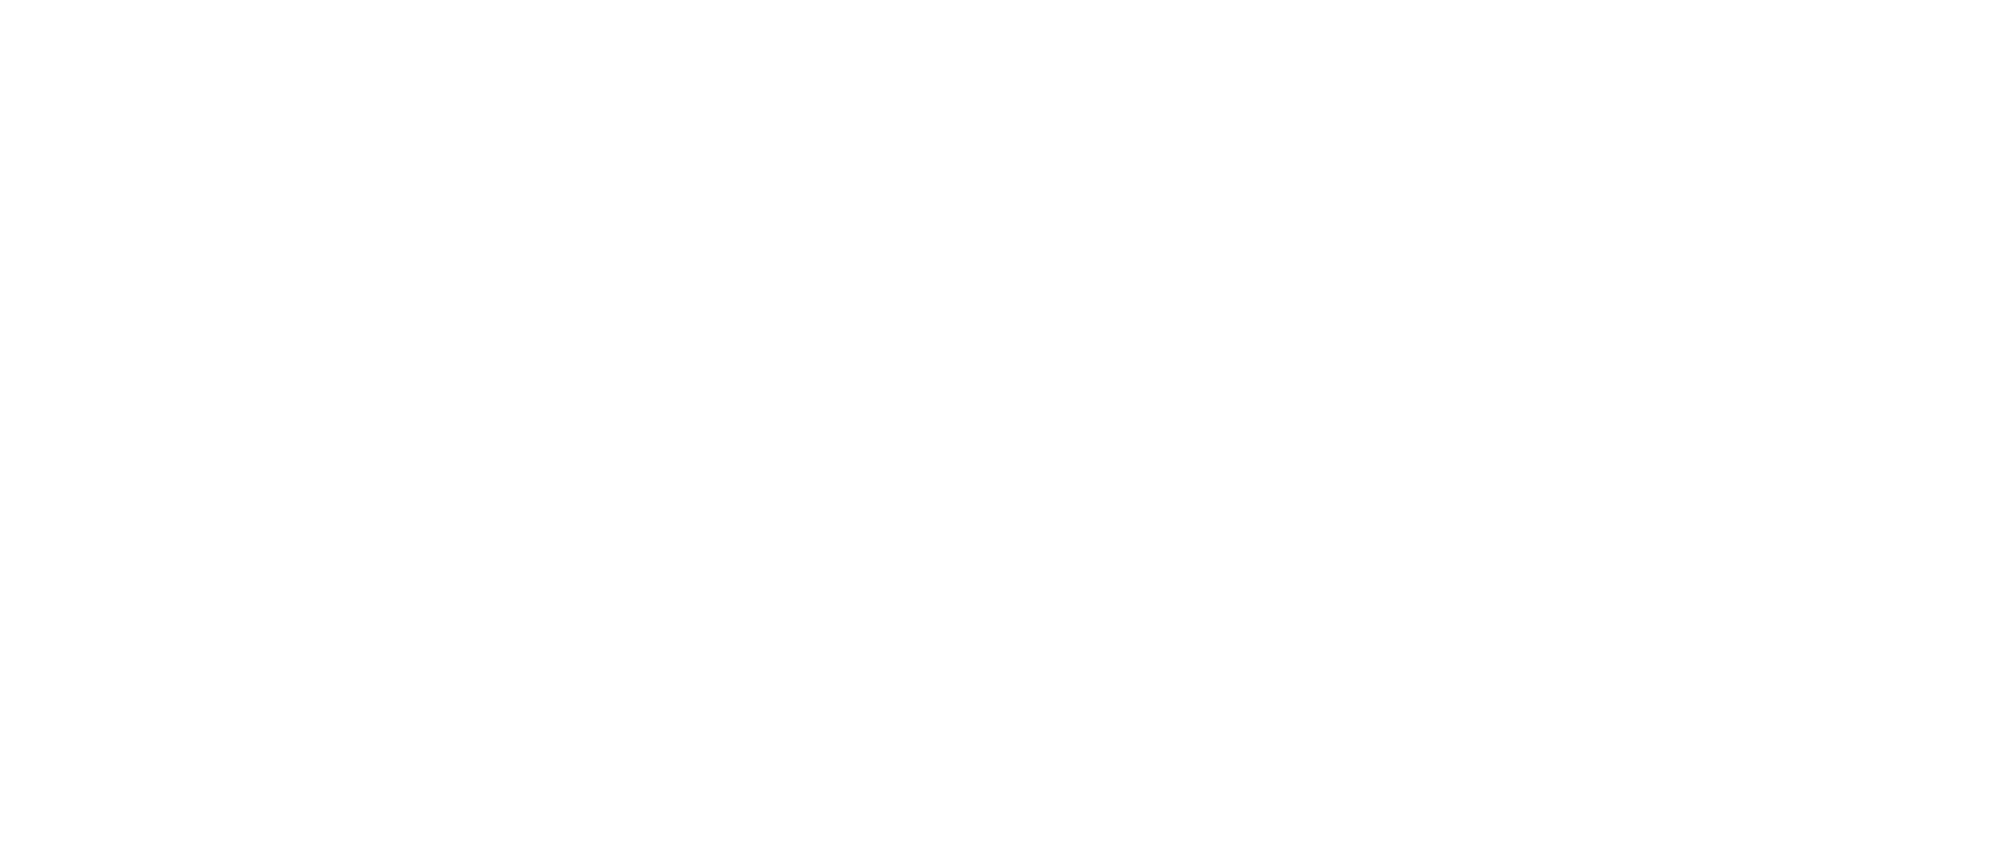 2000 X 2000 PNG Zildjian White Logo